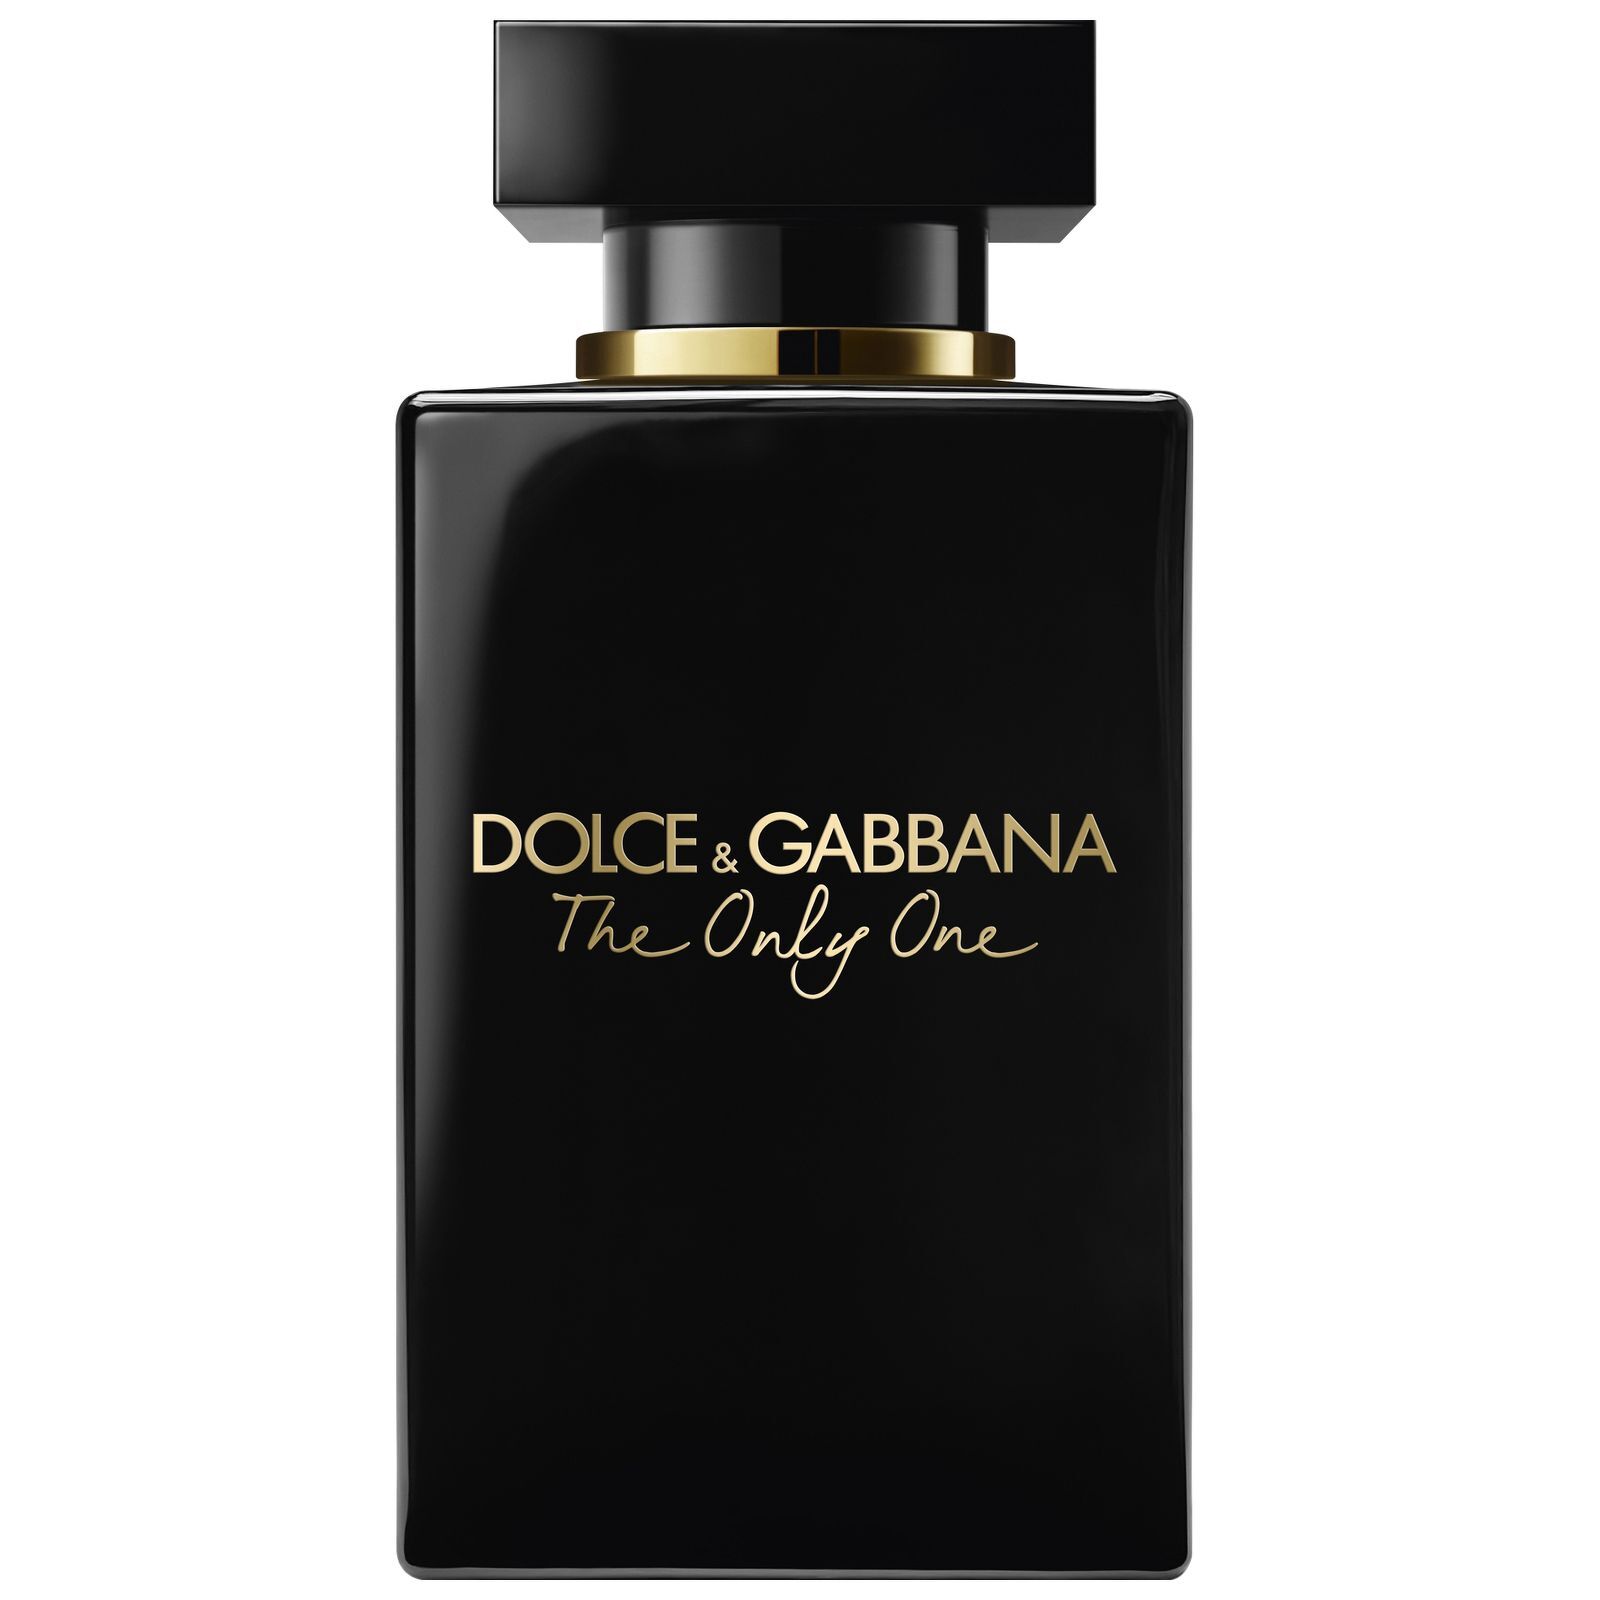 Dolce & Gabbana - The Only One 100ml Eau de Parfum Intense Spray  for Women